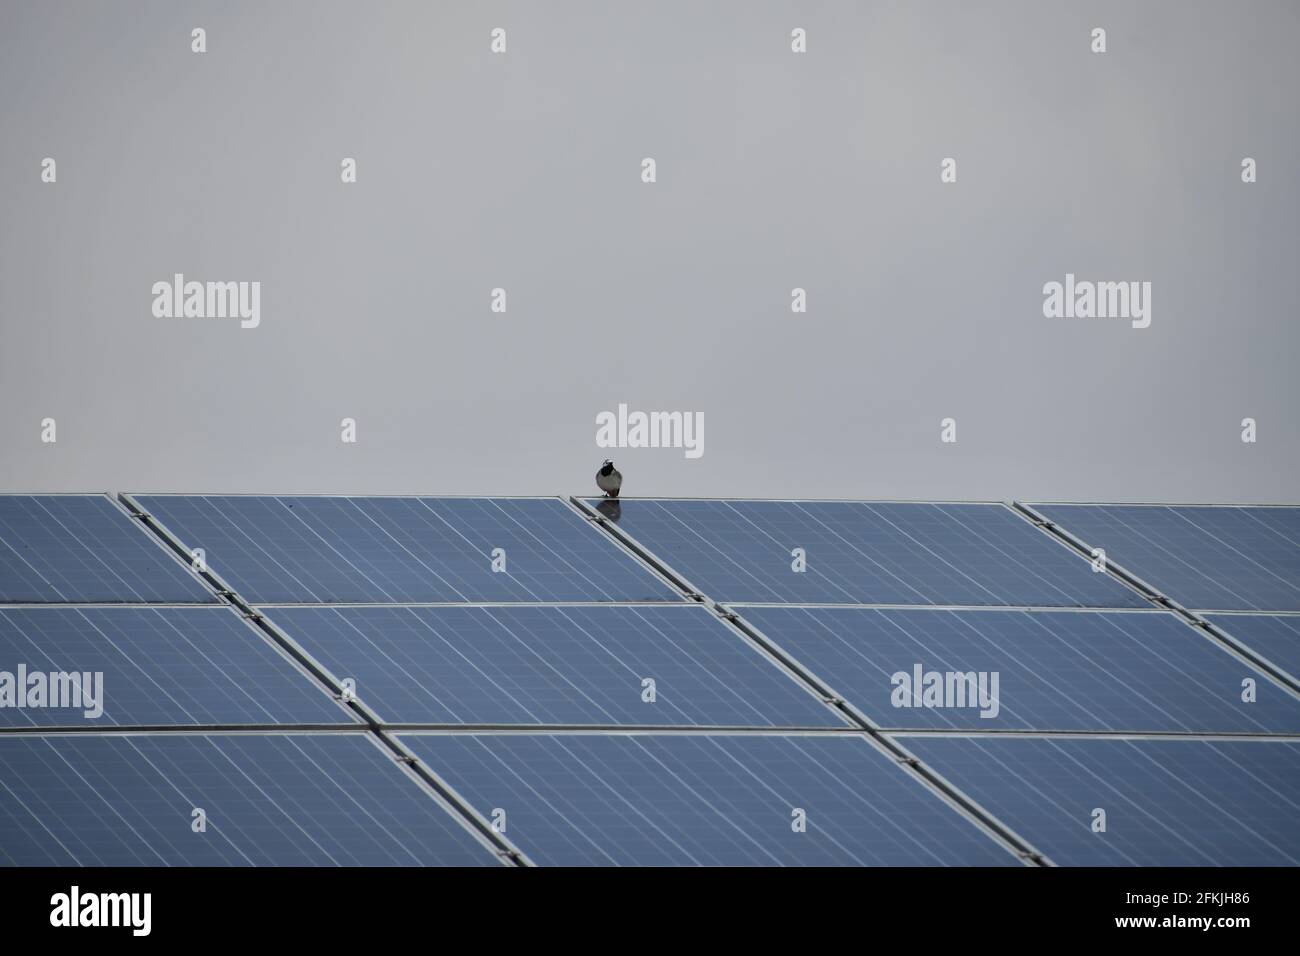 bird on solar roof Stock Photo